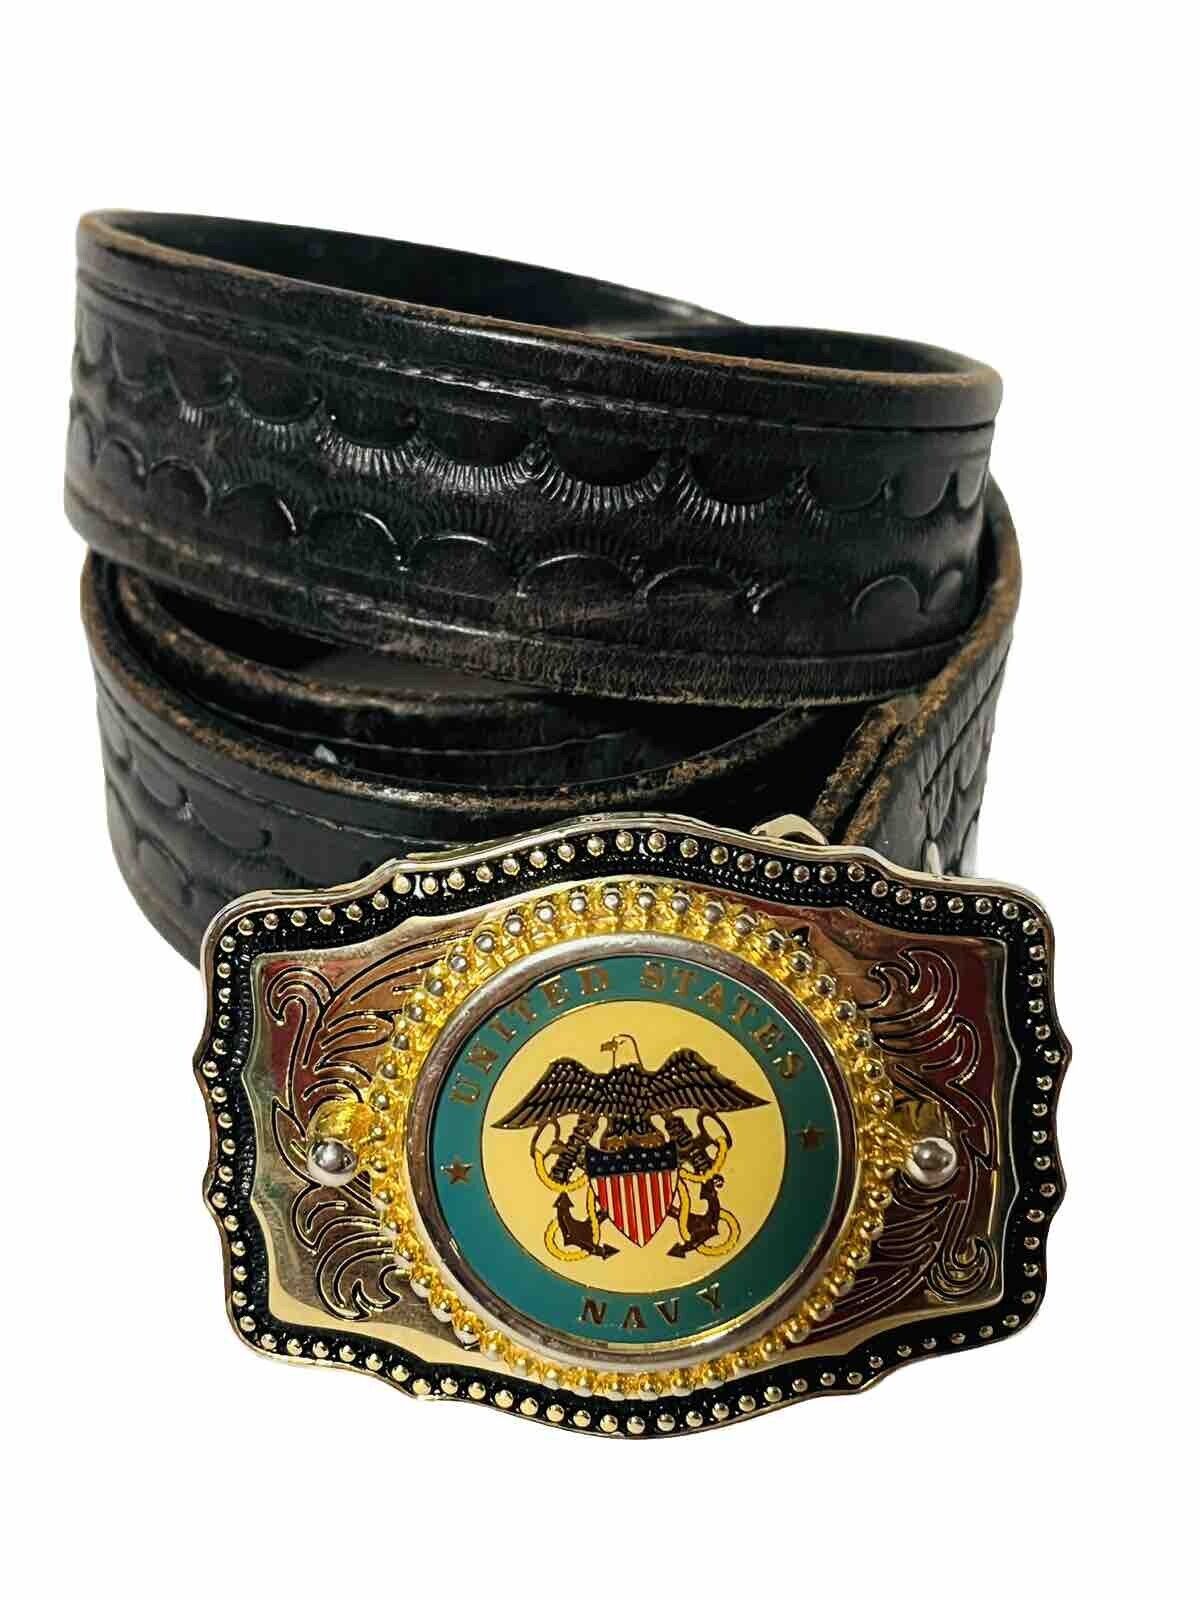 Vintage United States Navy Belt Buckle Black Leather Belt Mens 38 Made In USA